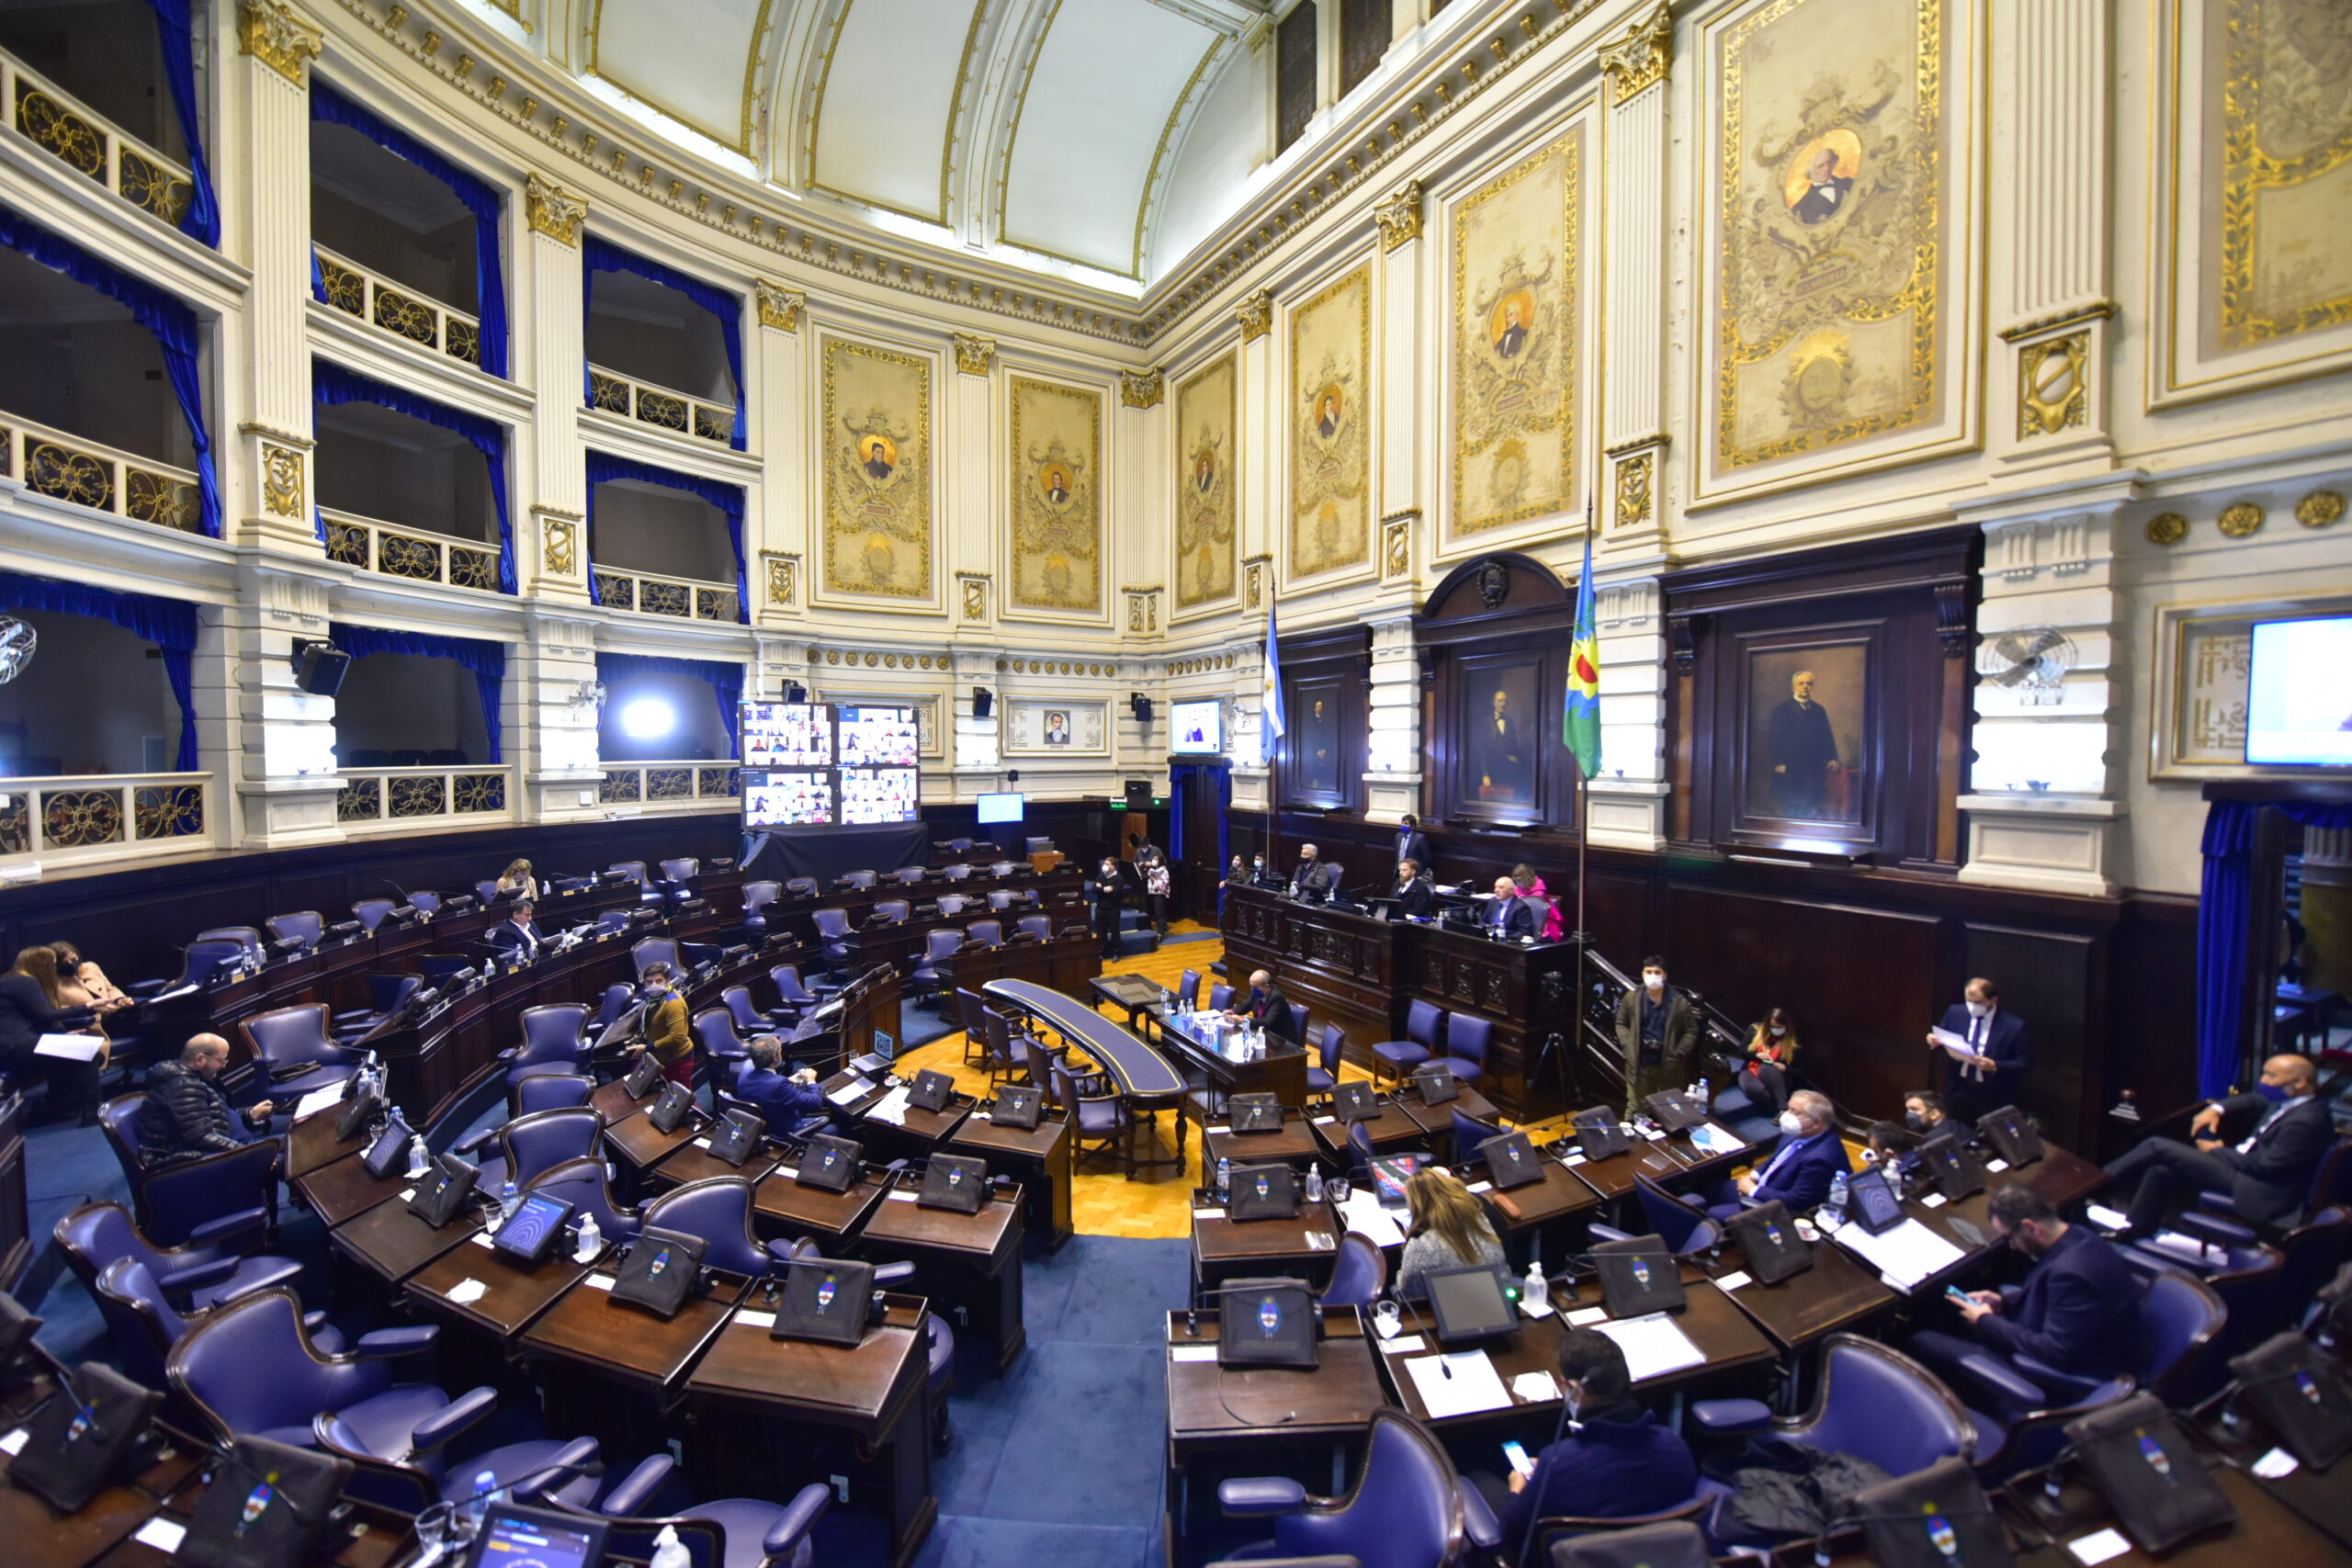 Cámara de Diputados Bonaerense